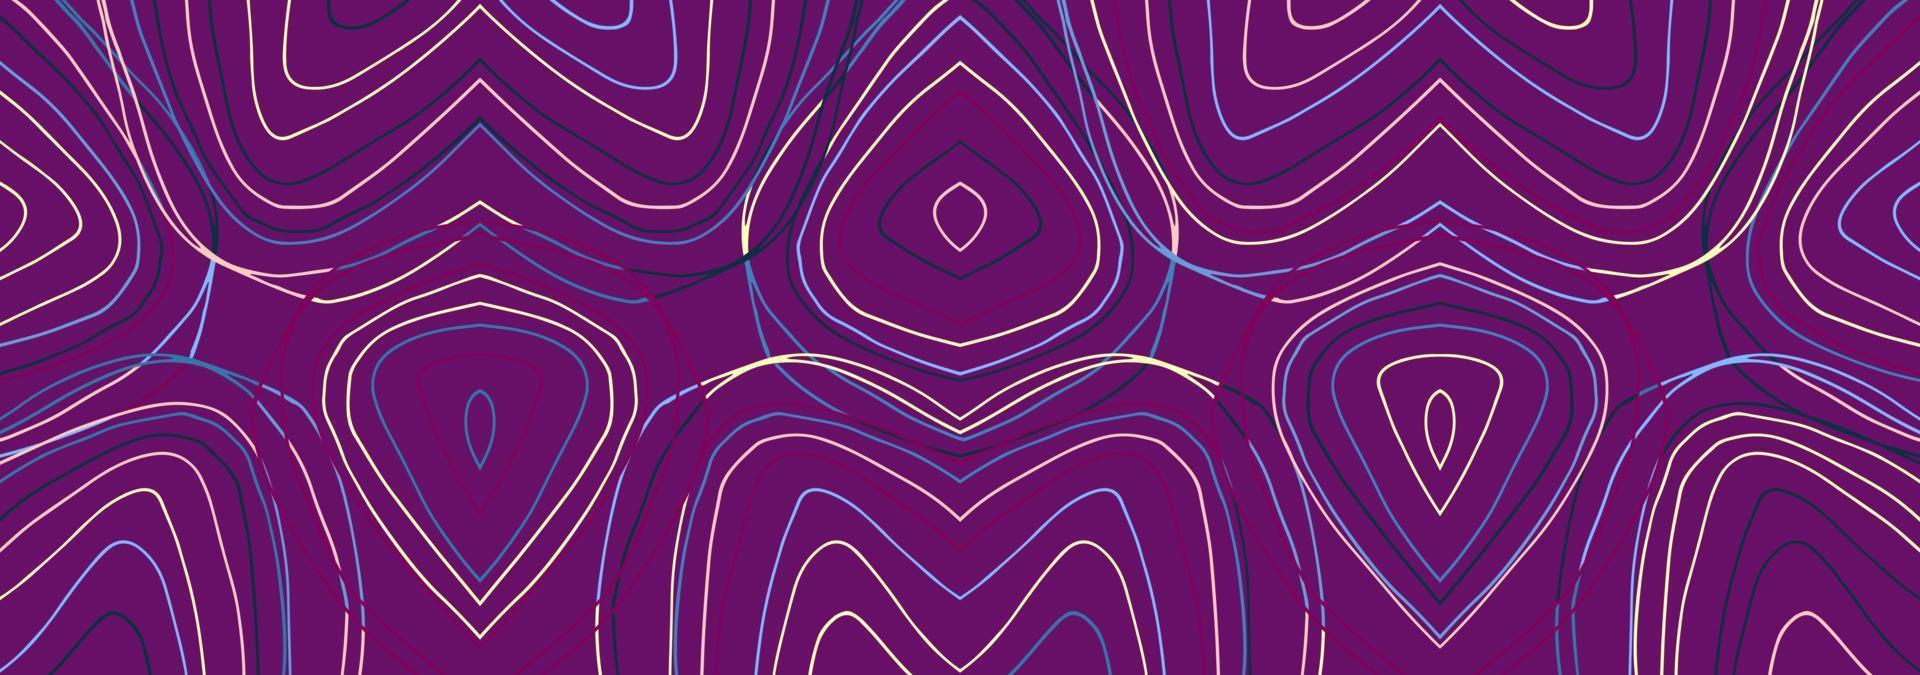 abstrakte Streifen horizontale Banner purple.template leer für Text, Postkarten-Vektor-Design. vektor